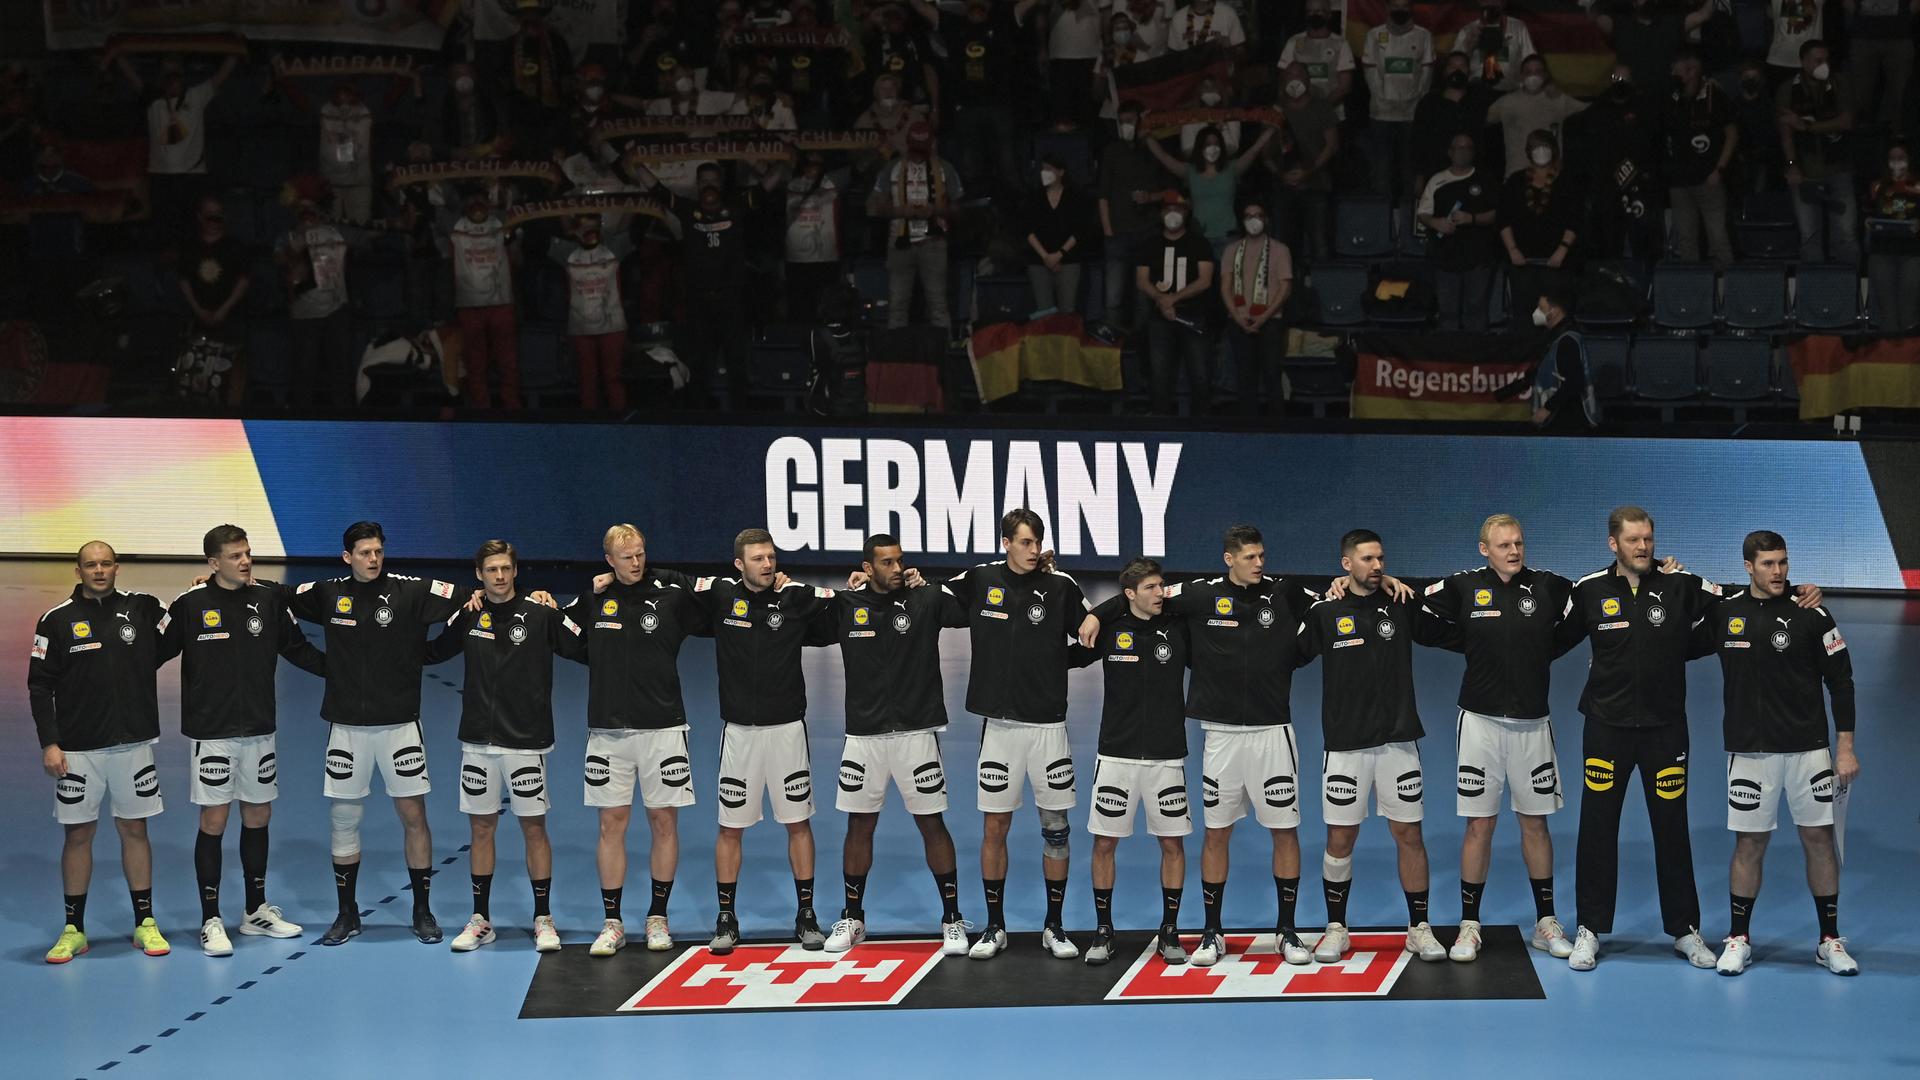 Die Spieler in schwarzen Trainingsjacken stehen nebeneinander und Arm in Arm auf dem Platz. Hinter ihnen der Schriftzug "Germany" und Zuschauer im Dunkeln auf den Tribünen. Manche davon mit Deutschland-Fahnen. 